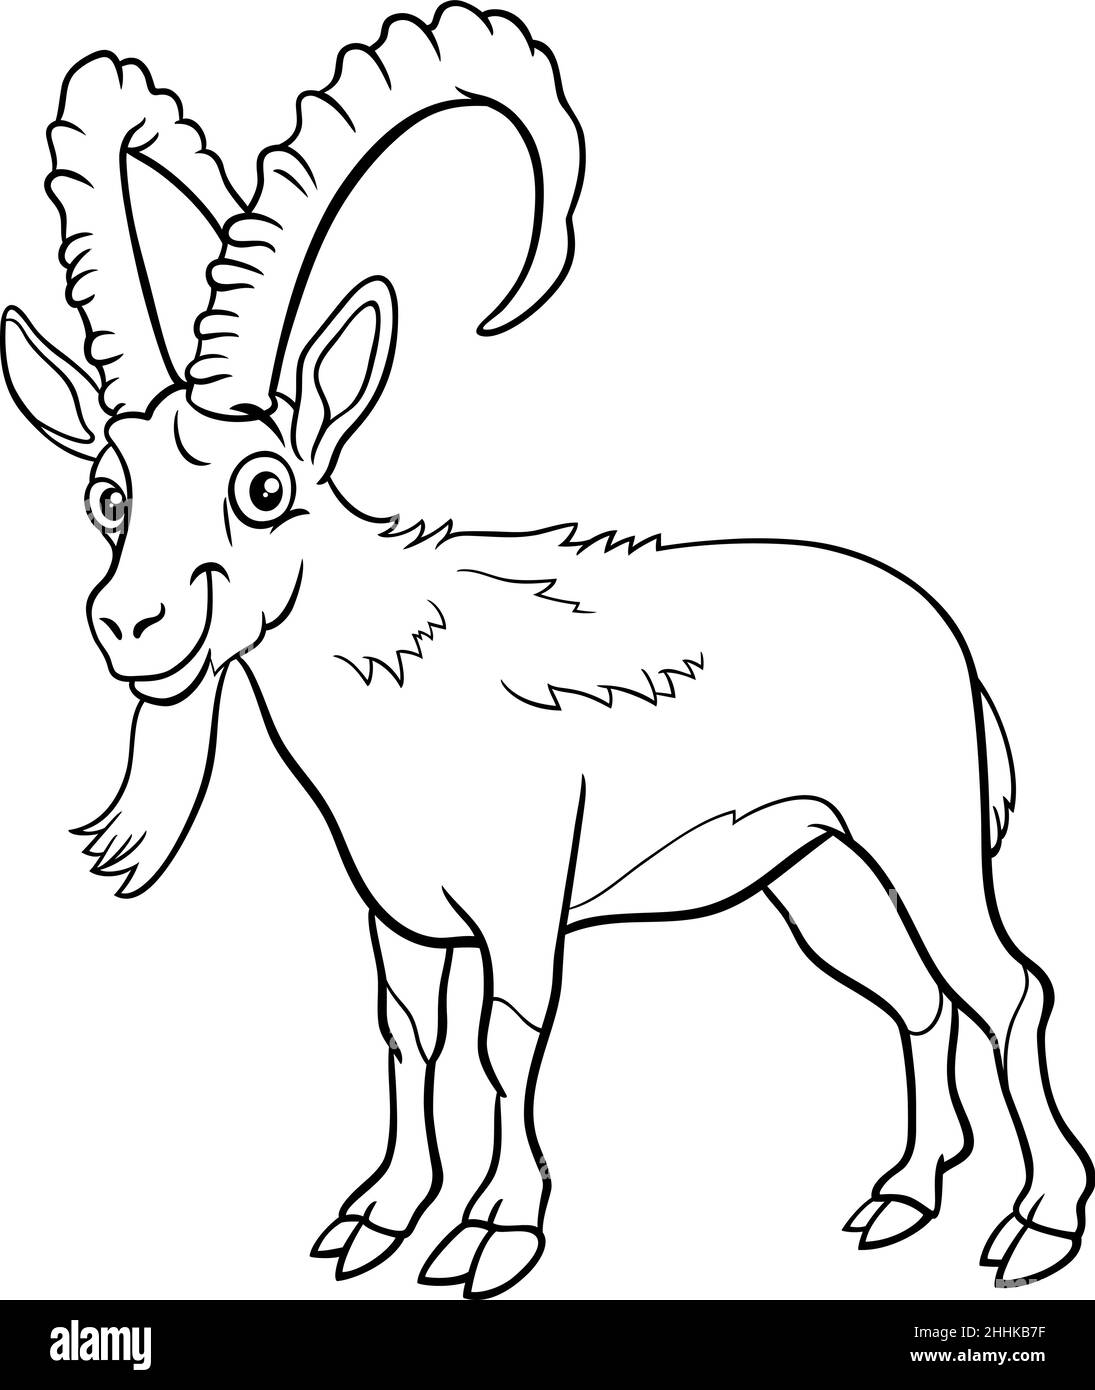 Dessin animé noir et blanc illustration de drôle ibex bande dessinée animal caractère coloriage page livre Illustration de Vecteur